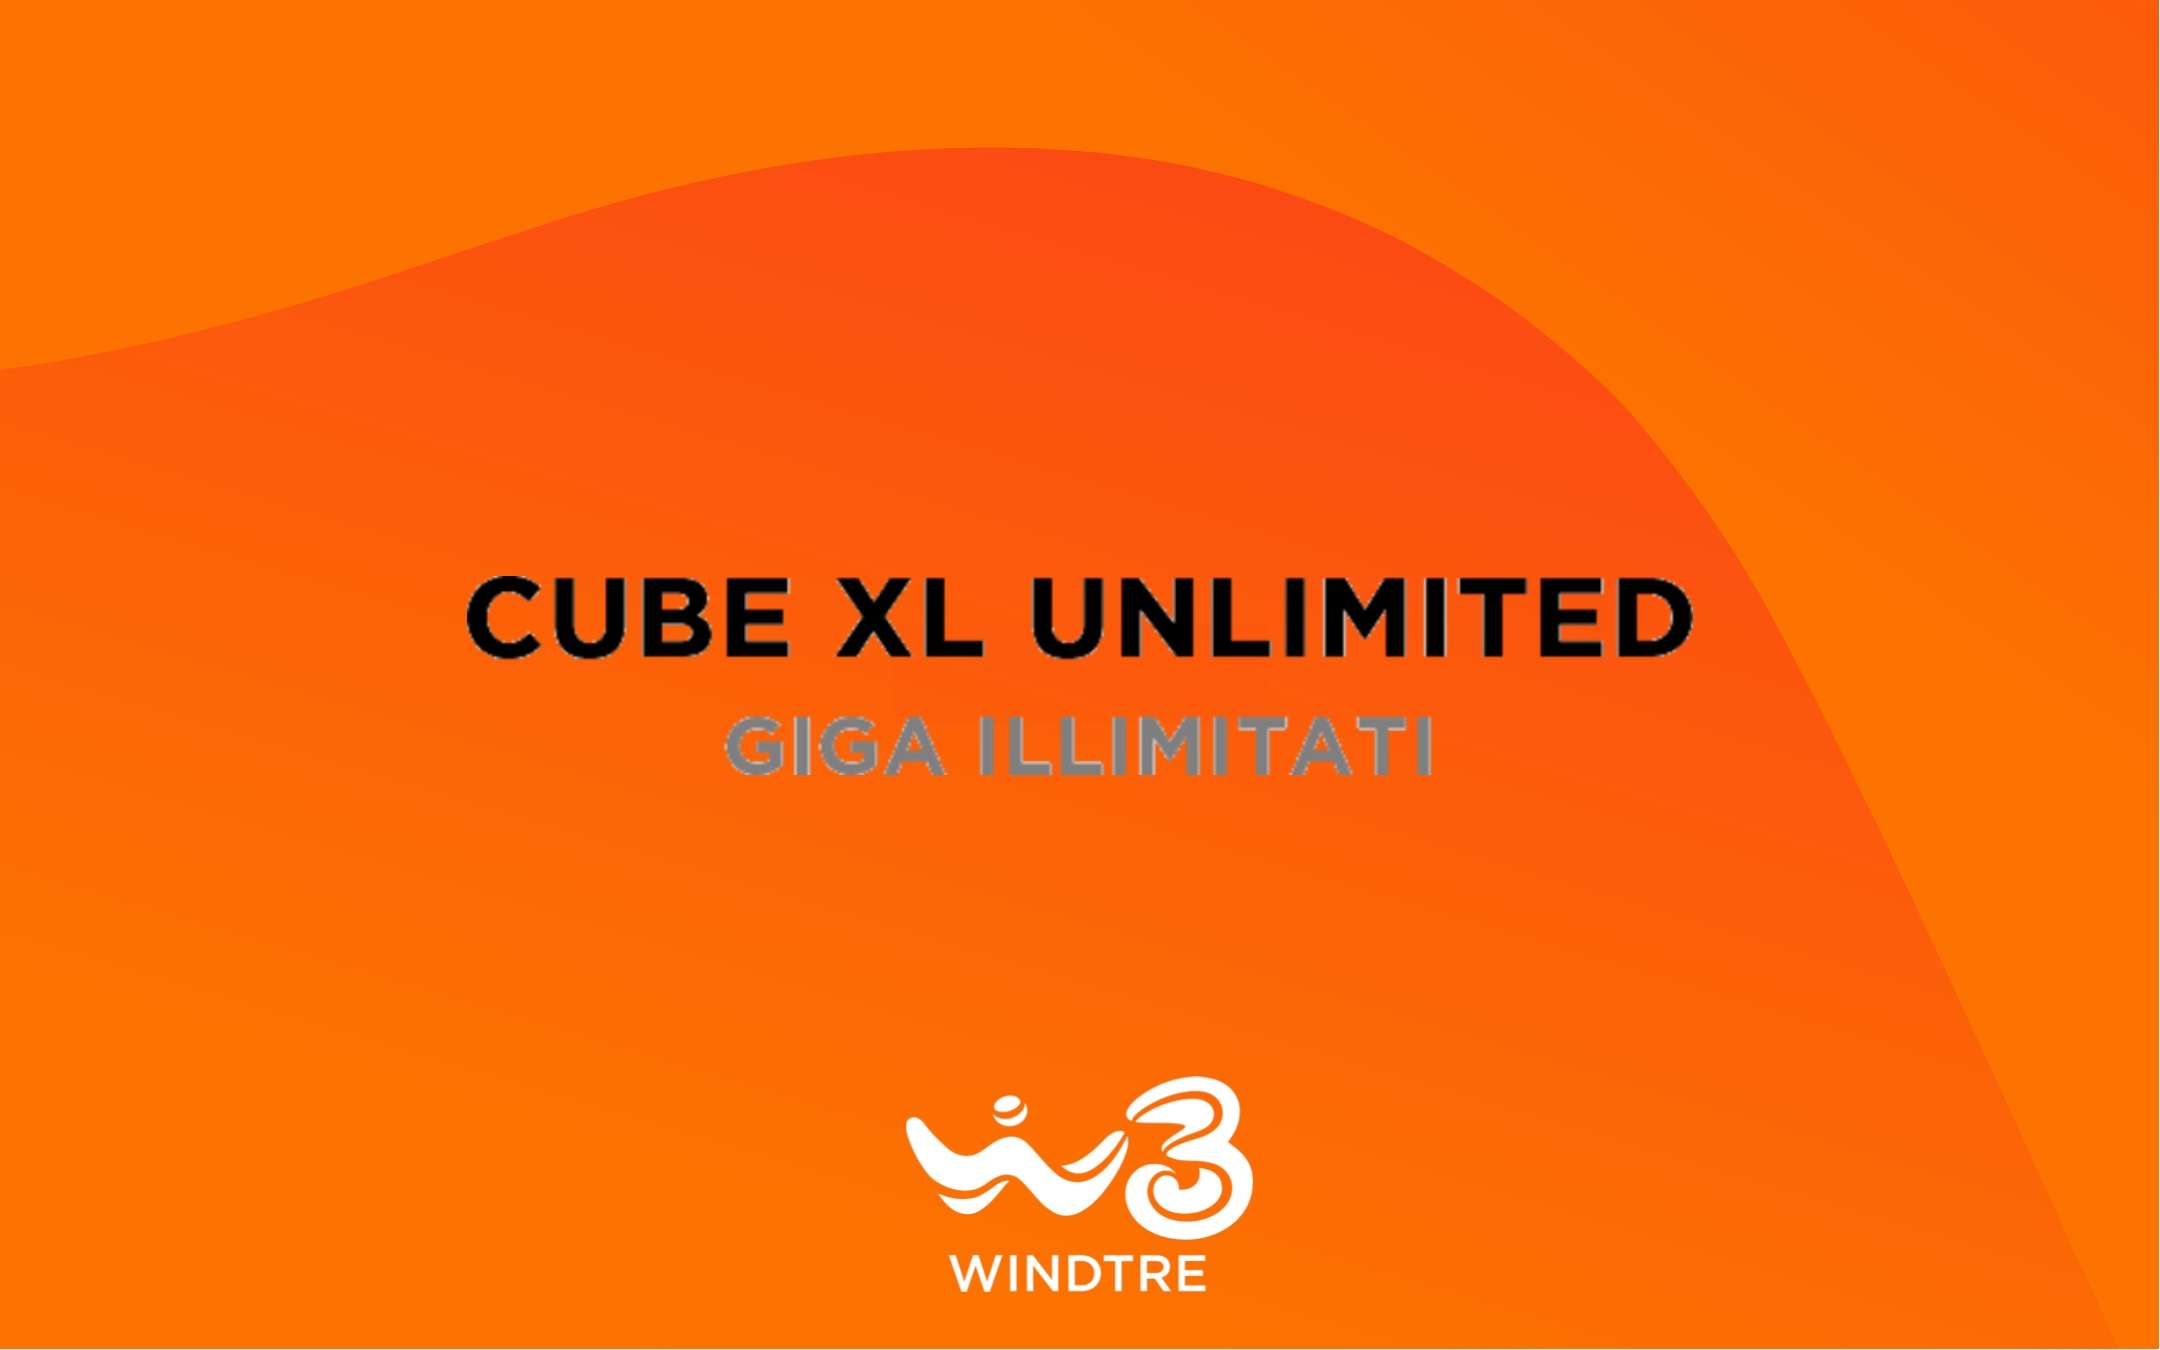 Cube XL Unlimited: promo proposta via SMS da oggi